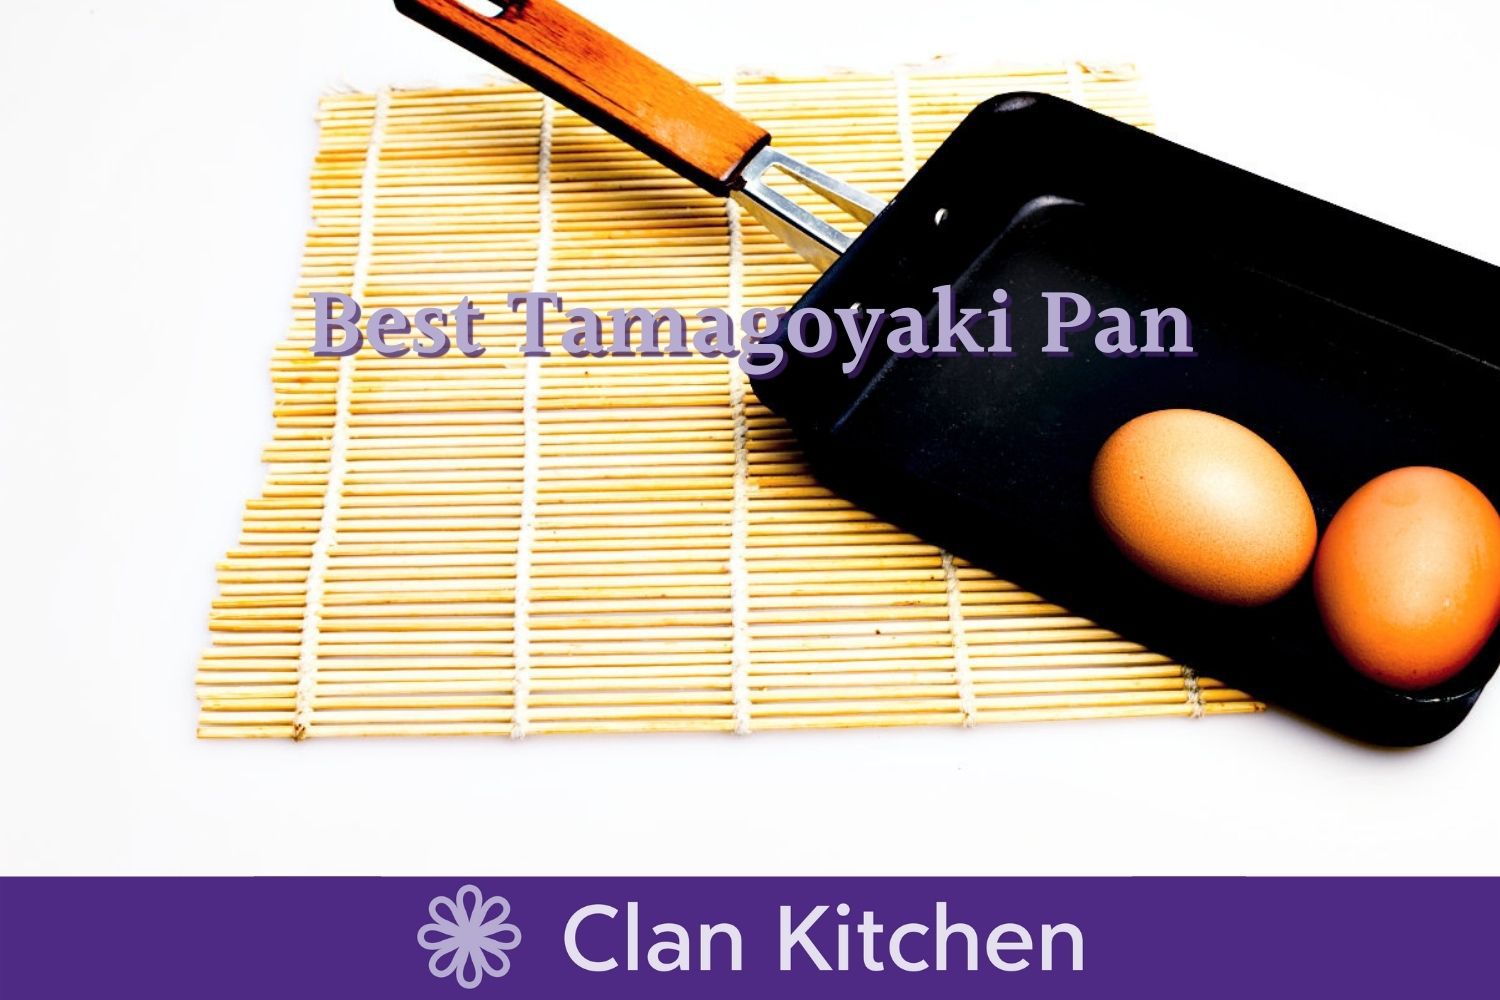 Egg Pan Made in Korea TeChef Tamagoyaki Japanese Omelette Pan 